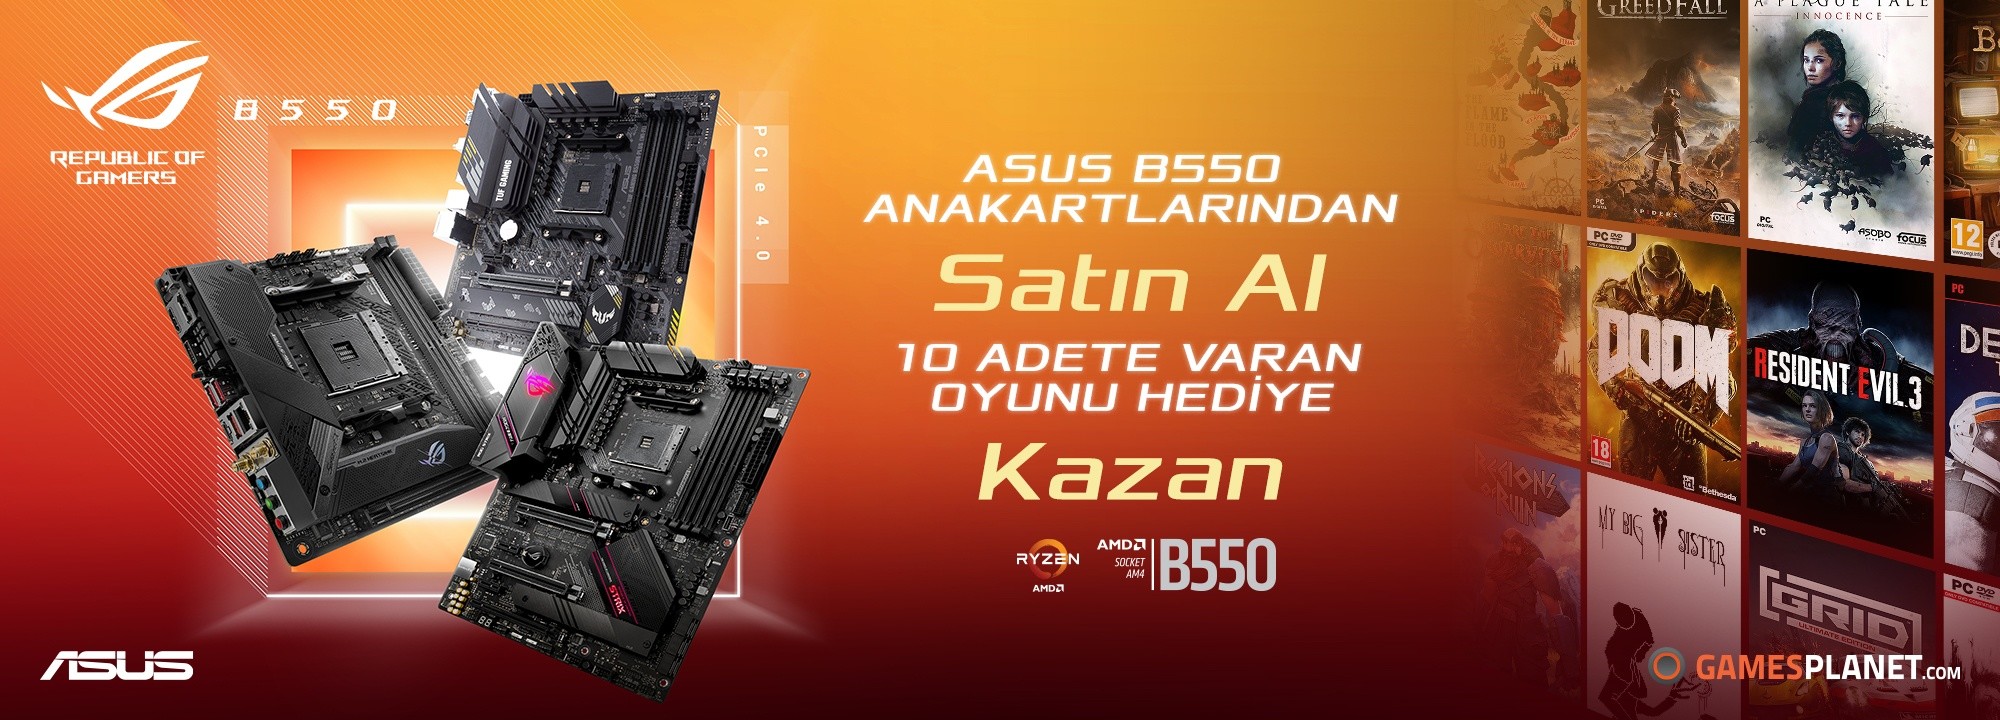 ASUS'tan Kampanya! AMD B550 anakart alana Oyun hediyesi ve Yorum yap Ödül kazan 15$ Nakit!